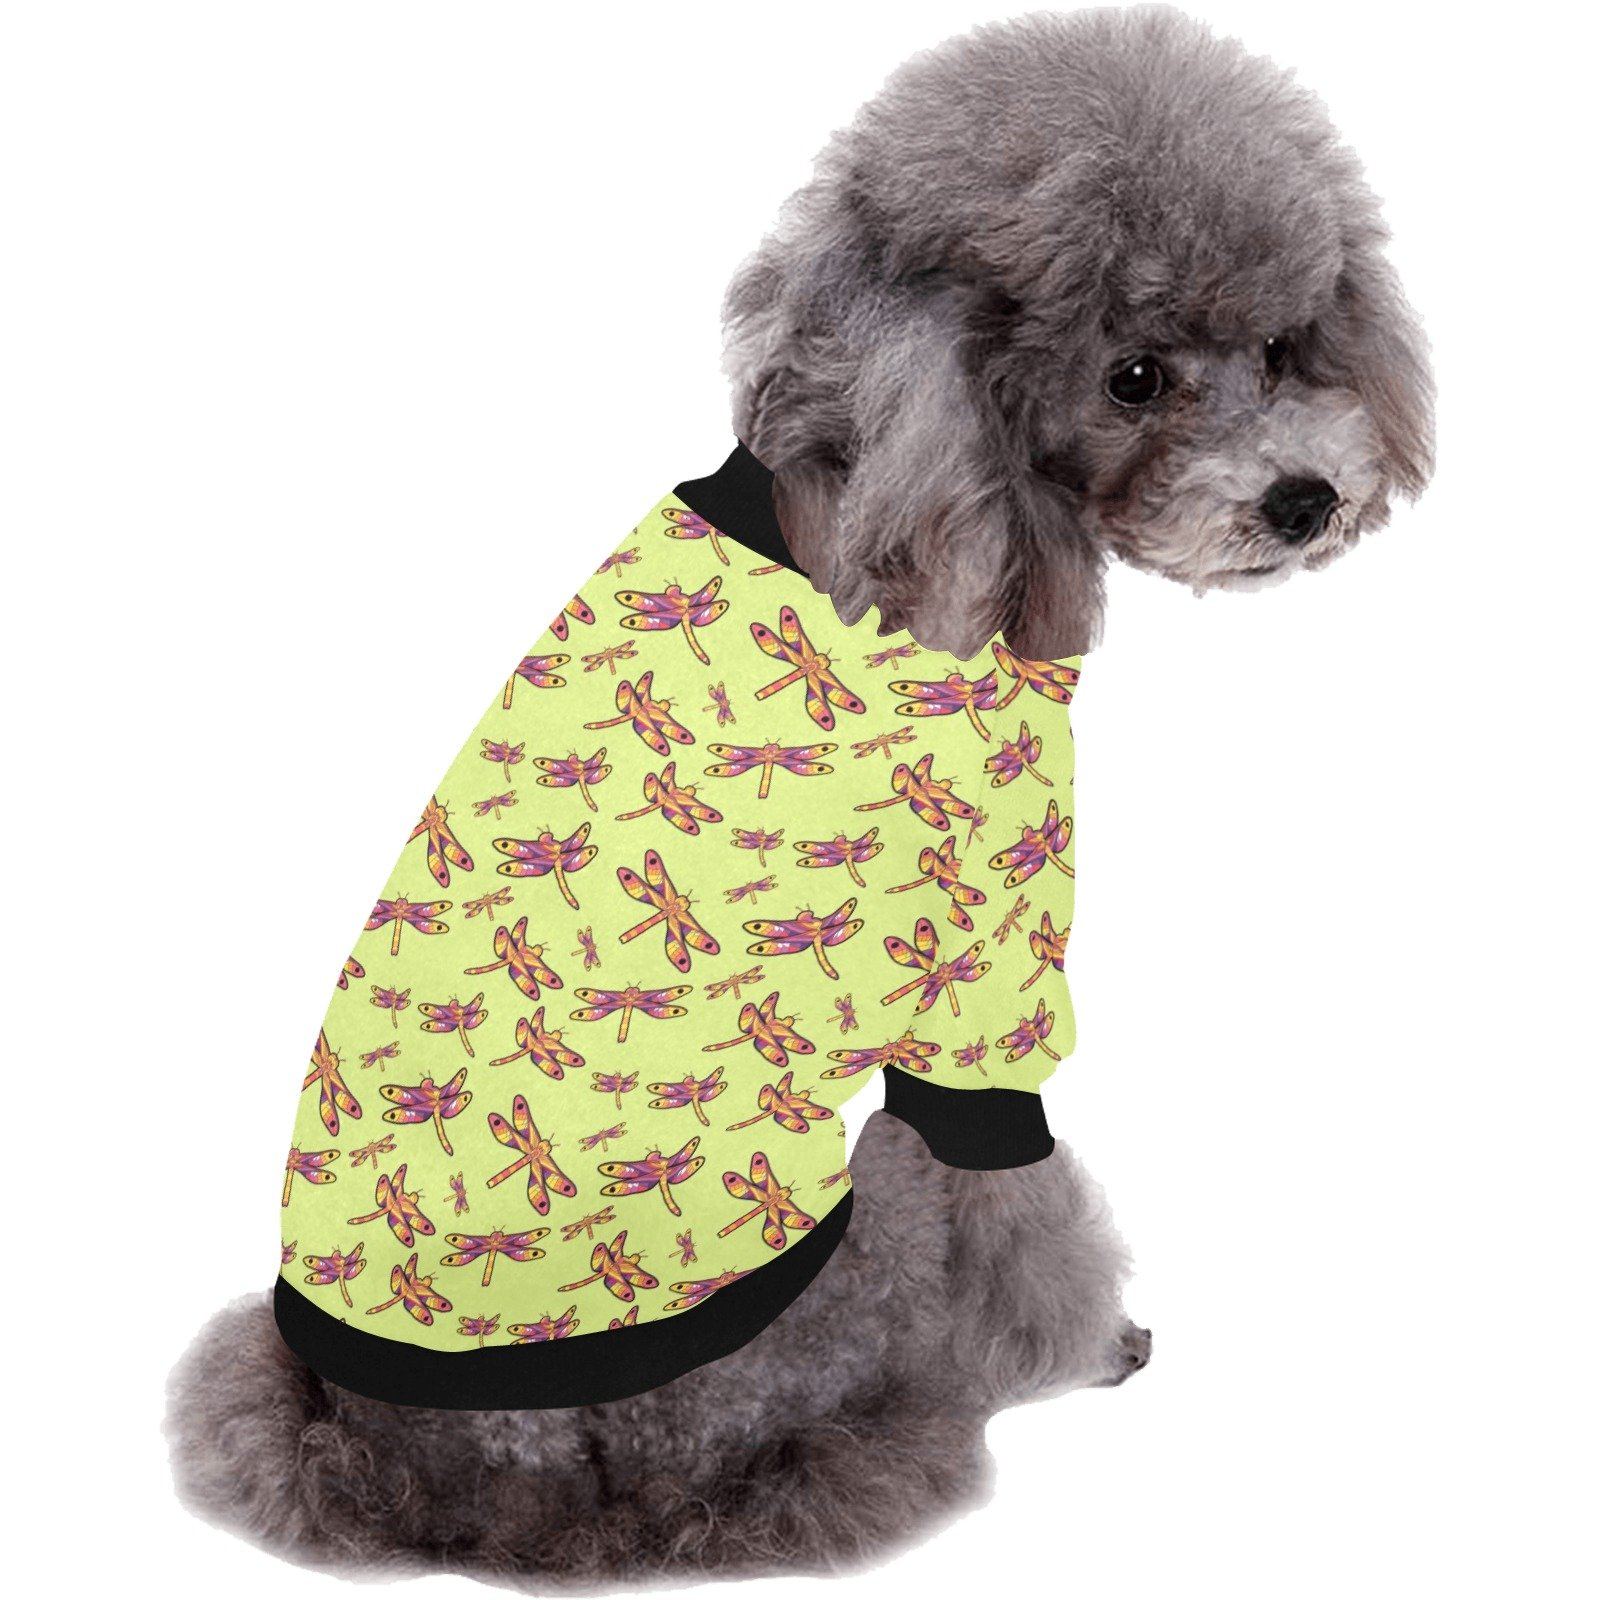 Gathering Lime Pet Dog Round Neck Shirt Pet Dog Round Neck Shirt e-joyer 